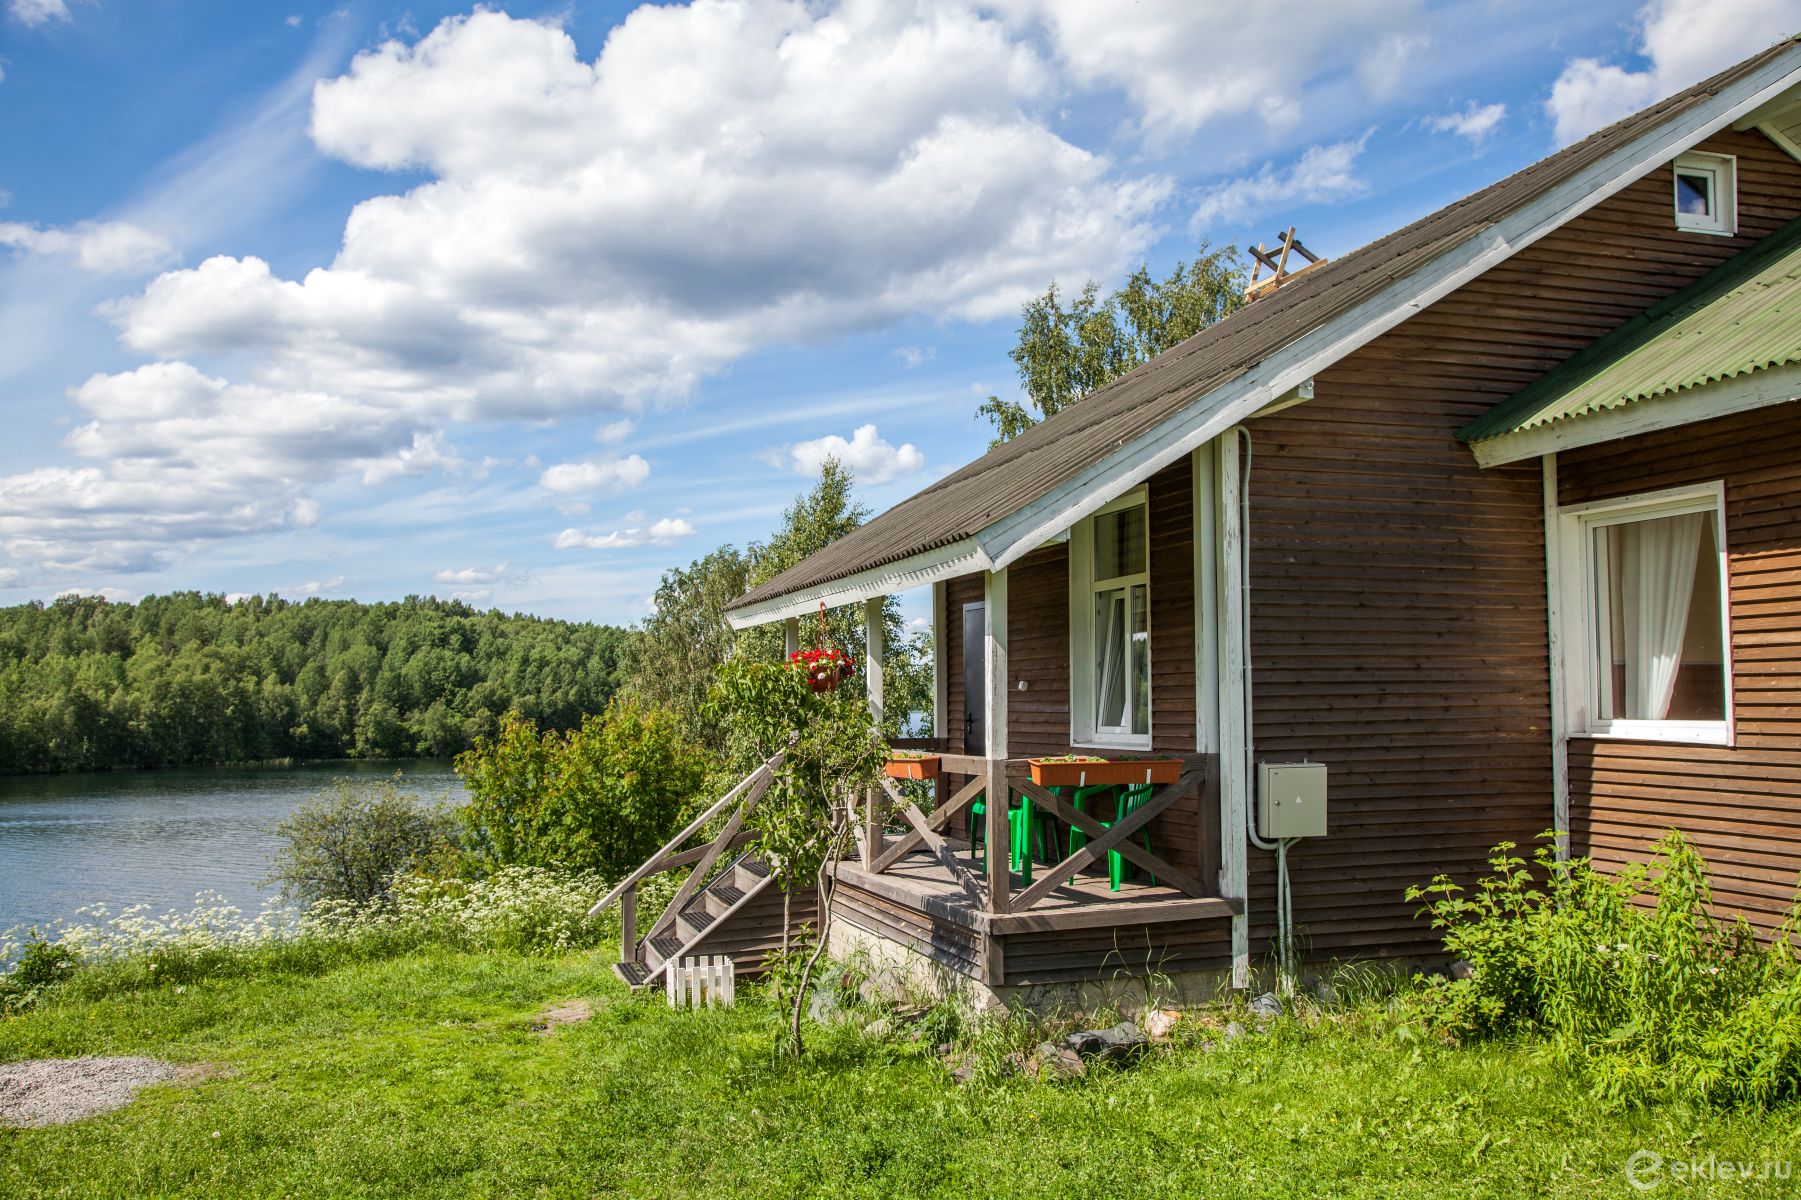 Снять дом у озера на месяц зп в германии